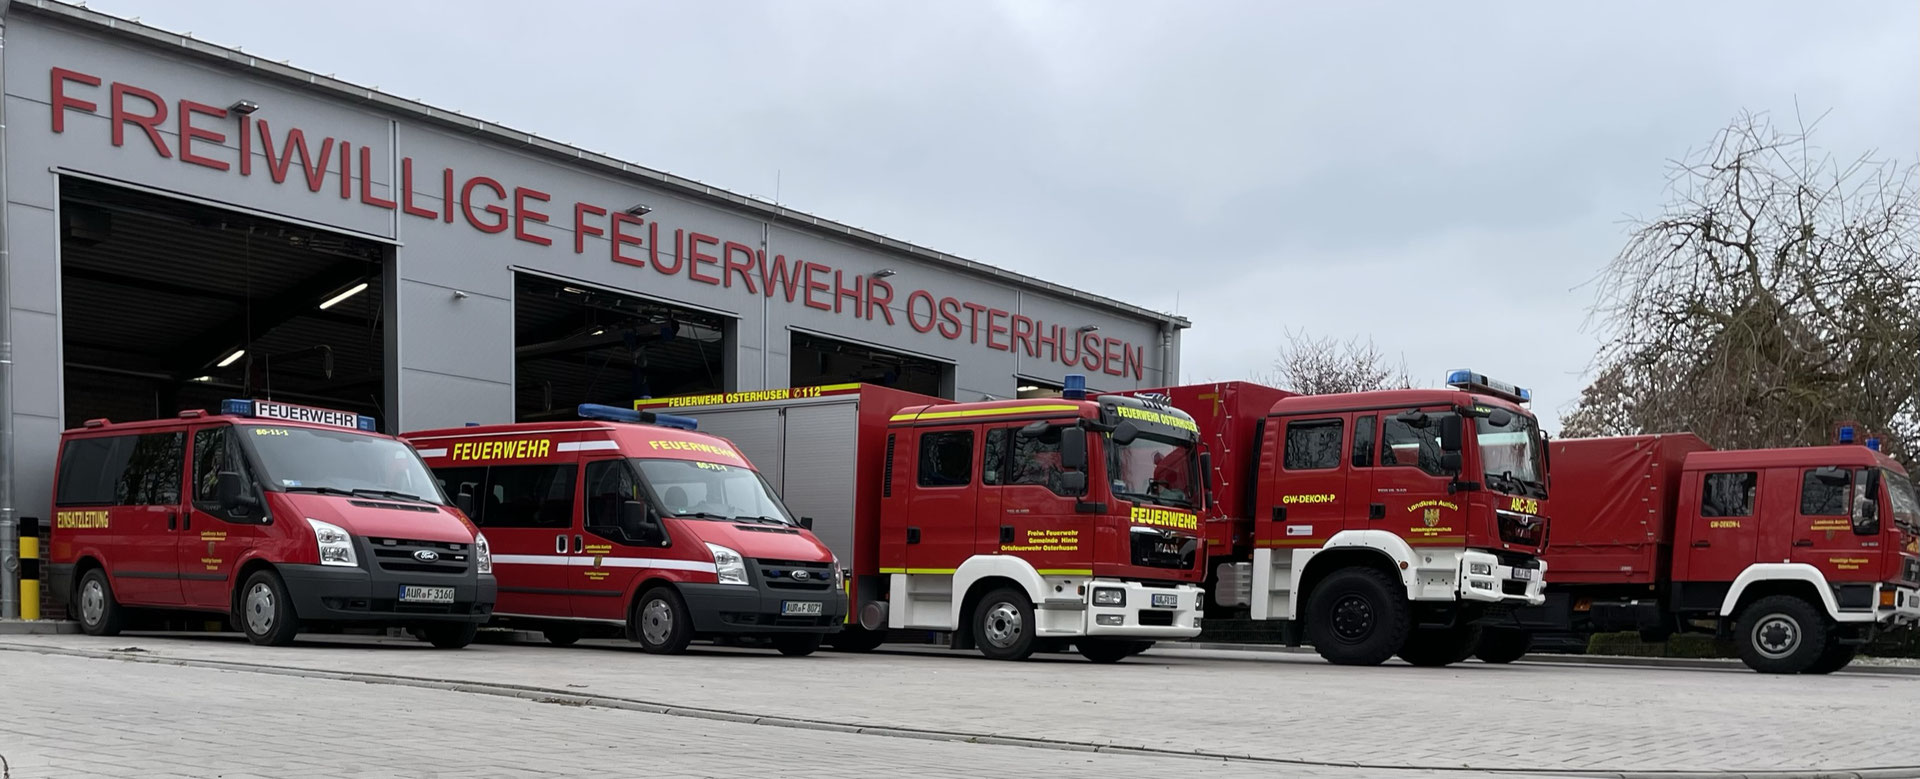 (c) Feuerwehr-osterhusen.de